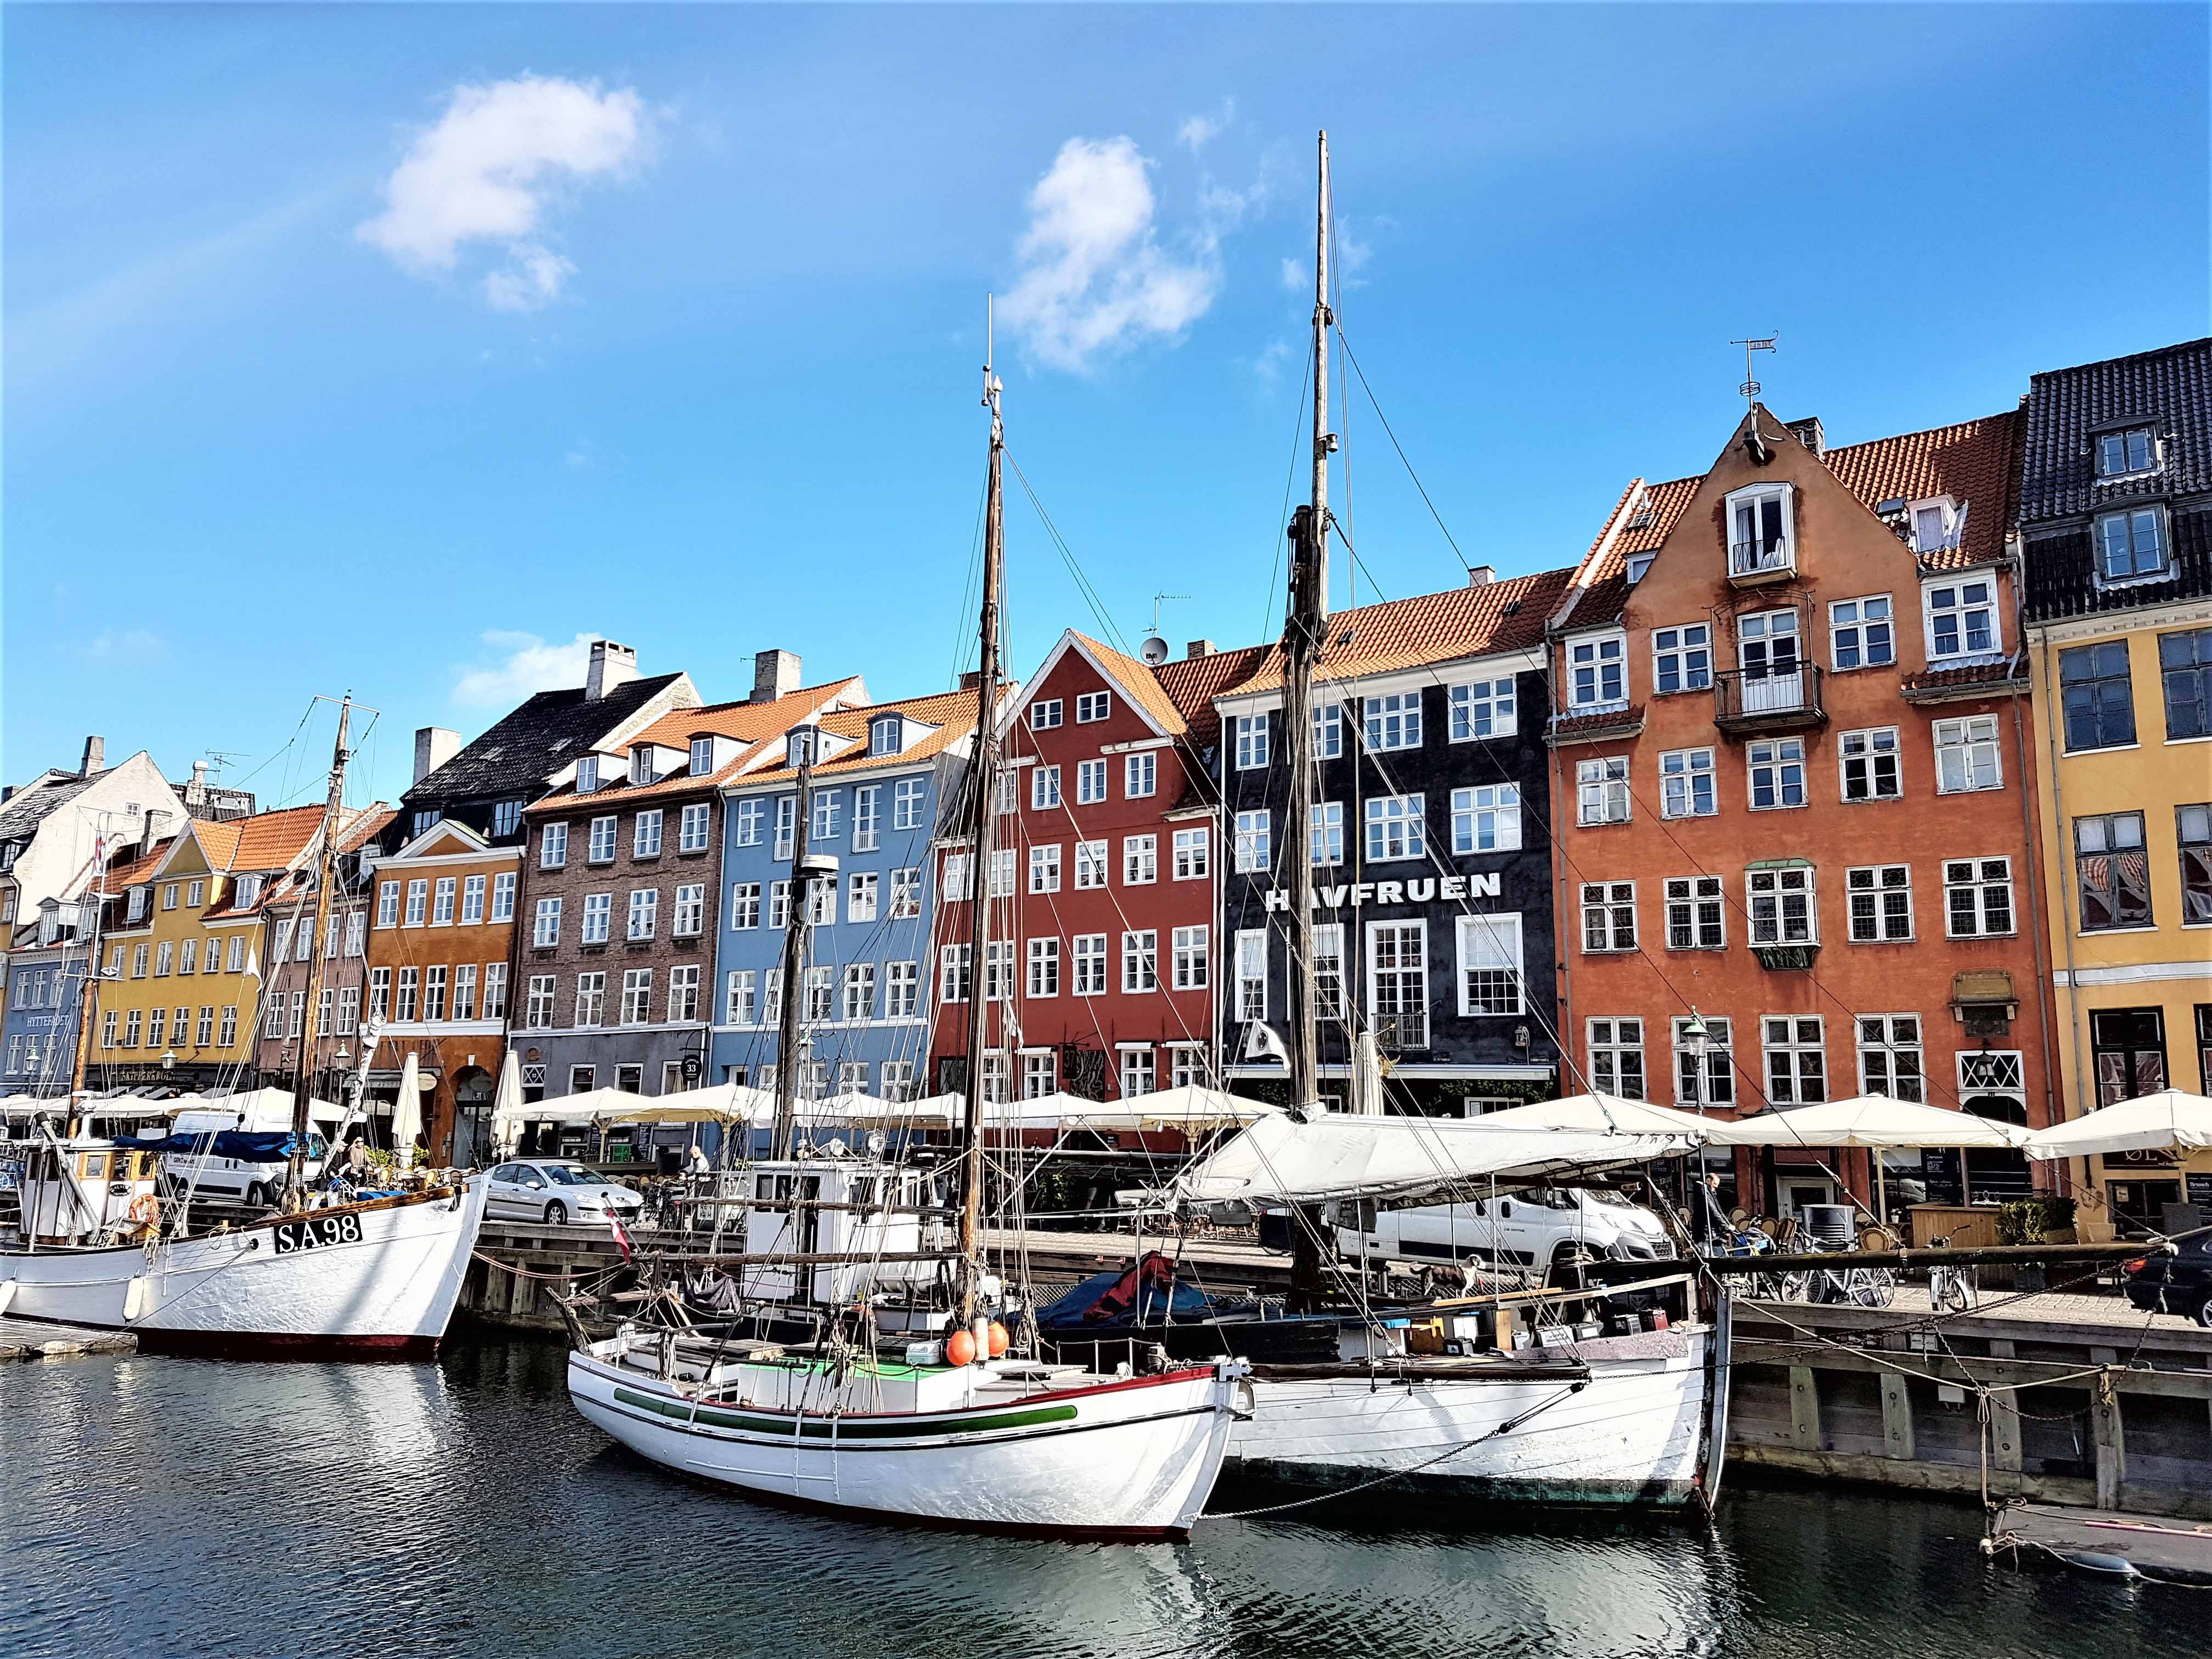 Der Nyhavn ("neuer Hafen") mit seinen bunten Giebelhäusern und Traditionsschiffen gehört zu den optischen Visitenkarten Kopenhagens. Foto: Daniel Marschner